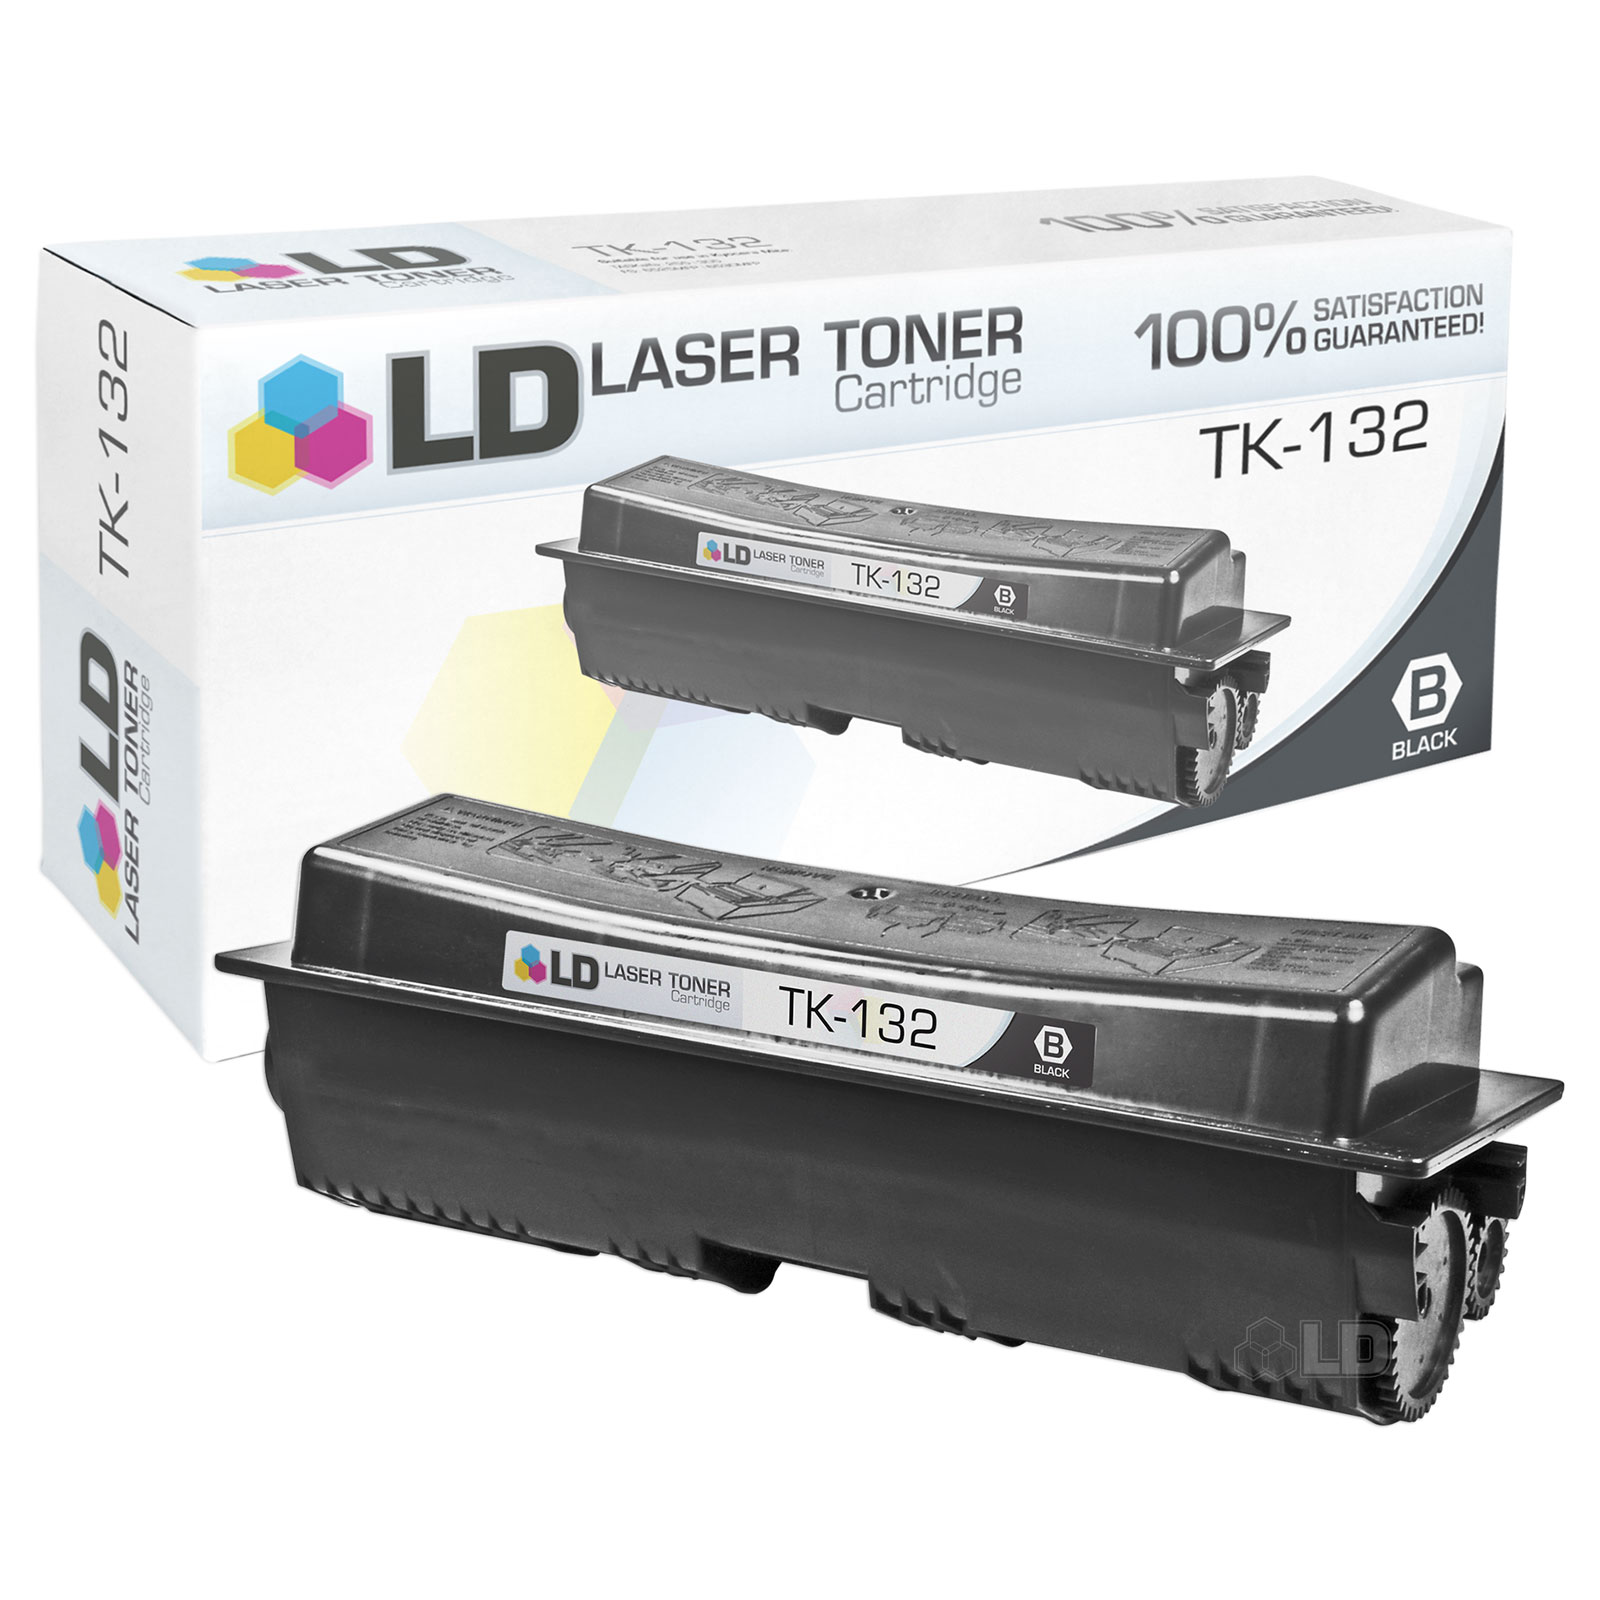 Compatible Kyocera Mita Black TK-132 Laser Toner Cartridge for the FS-1300D & FS-1350DN - image 1 of 1